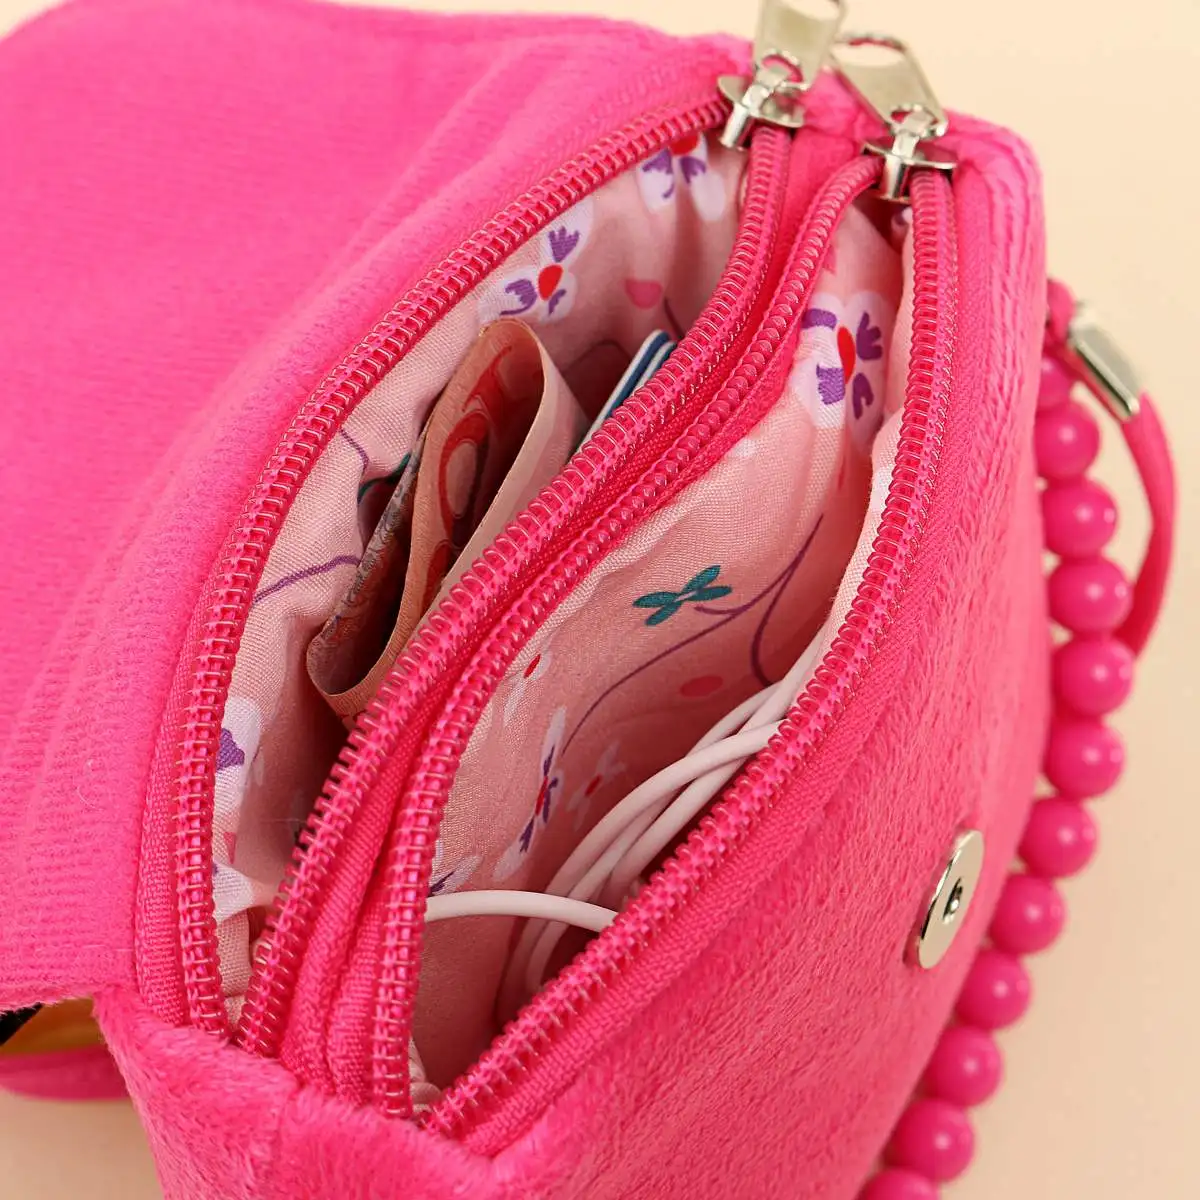 Flipkart.com | Le Delite Kids Handbag girls,Sling Bag,Coin Purses,Gift for  kids girl,Cute bags/Unicorn stylish purse/baby girls doll bag/kids hand bag  Waterproof Sling Bag - Sling Bag